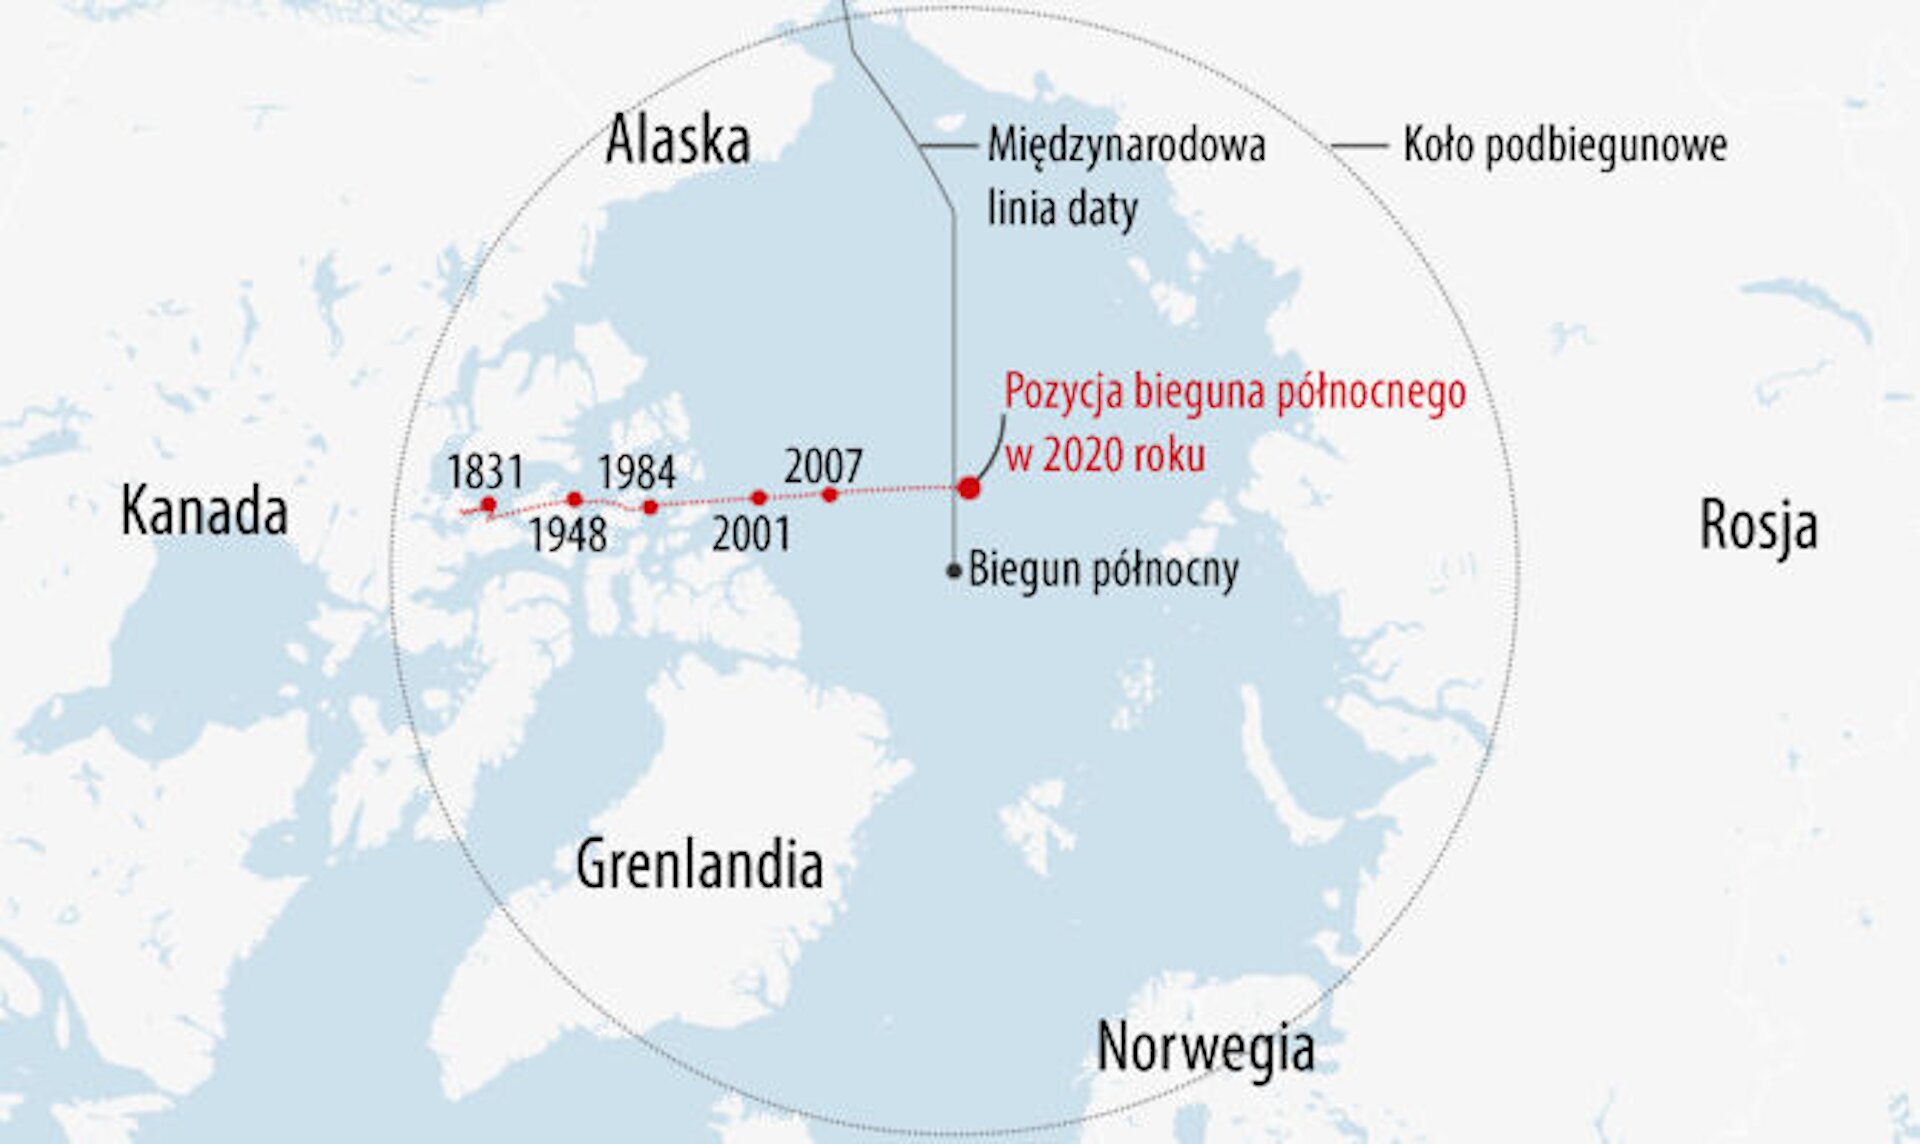 Rys. 2. przedstawia fragment mapy geograficznej przedstawiający okolice koła podbiegunowego wokół północnego bieguna geograficznego Ziemi z zaznaczonymi na czerwono punktami oznaczającymi pozycje bieguna magnetycznego na północnej półkuli w latach (od lewej): 1831, 1948, 1984, 2001. 2007, 2020. Lądy są barwy białej z napisami: Kanada, Alaska, Grenlandia, Norwegia, Rosja w odpowiednich miejscach, a wody w kolorze bladoniebieskim.